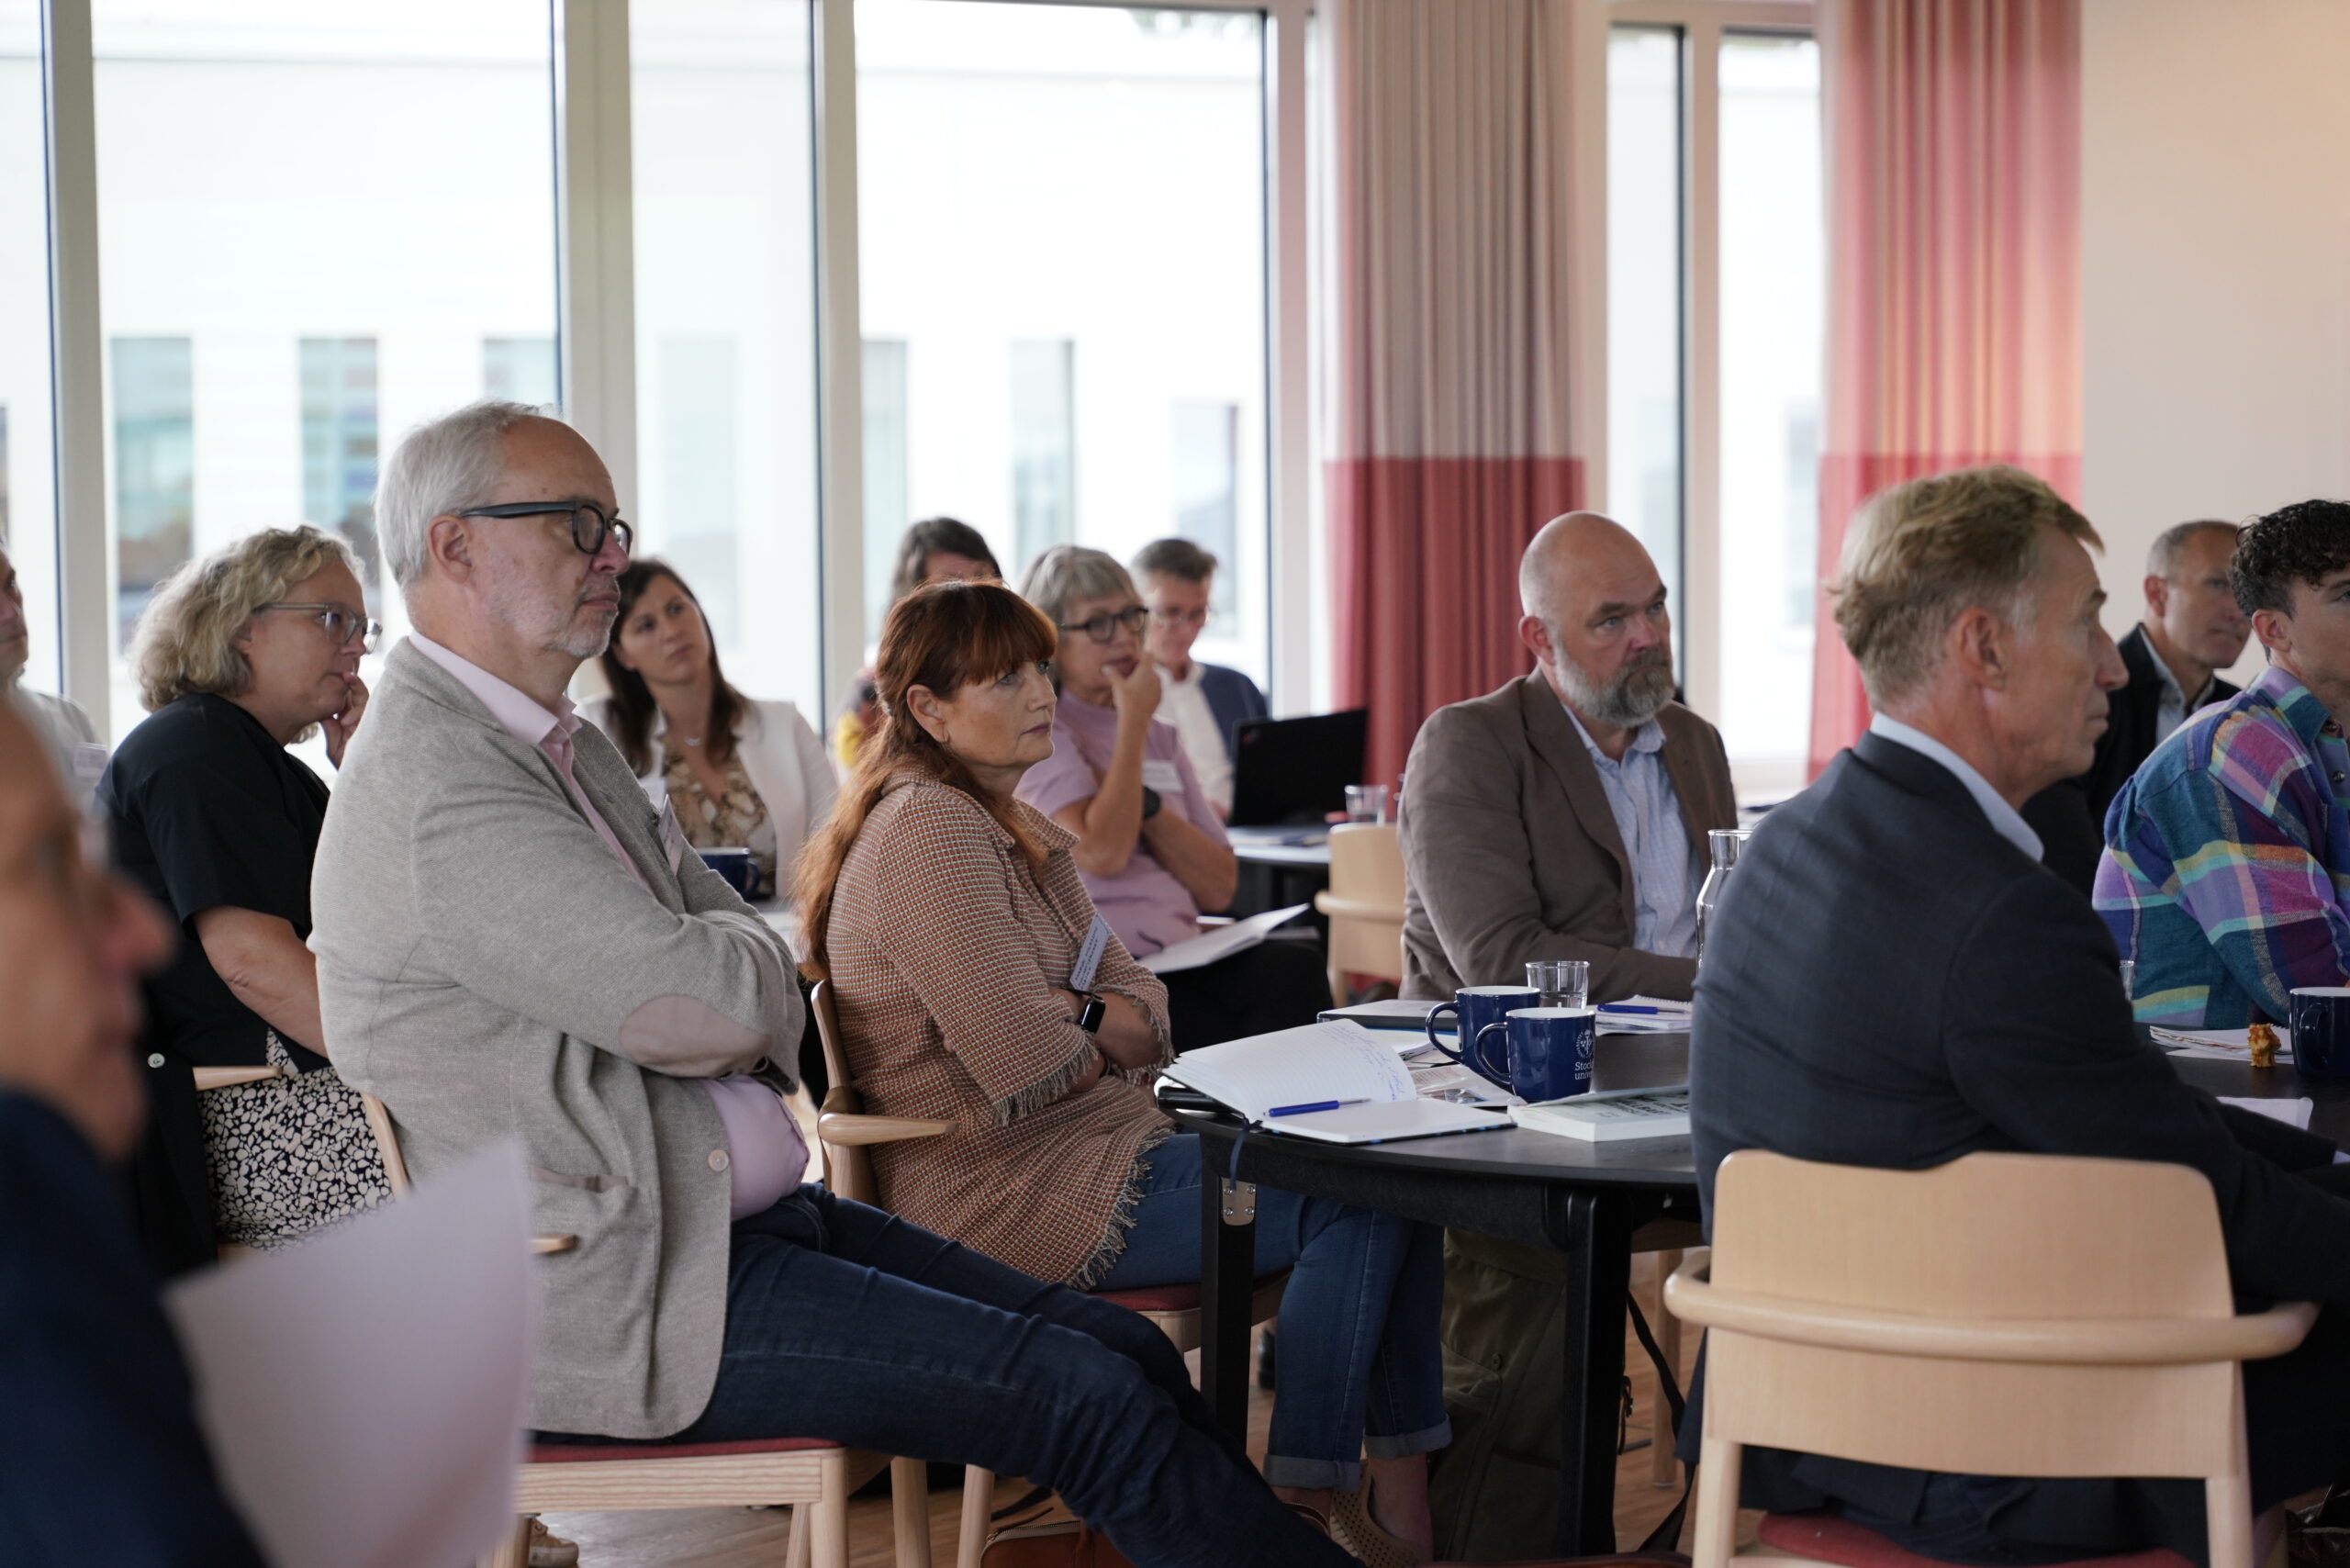 34 ordförande och kanslichefer inom fackföreningsrörelsen utbildas nu i ledarskap för en rättvis klimatomställning genom FAIRTRANS. Foto: Minda Holm, Stockholm Resilience Centre